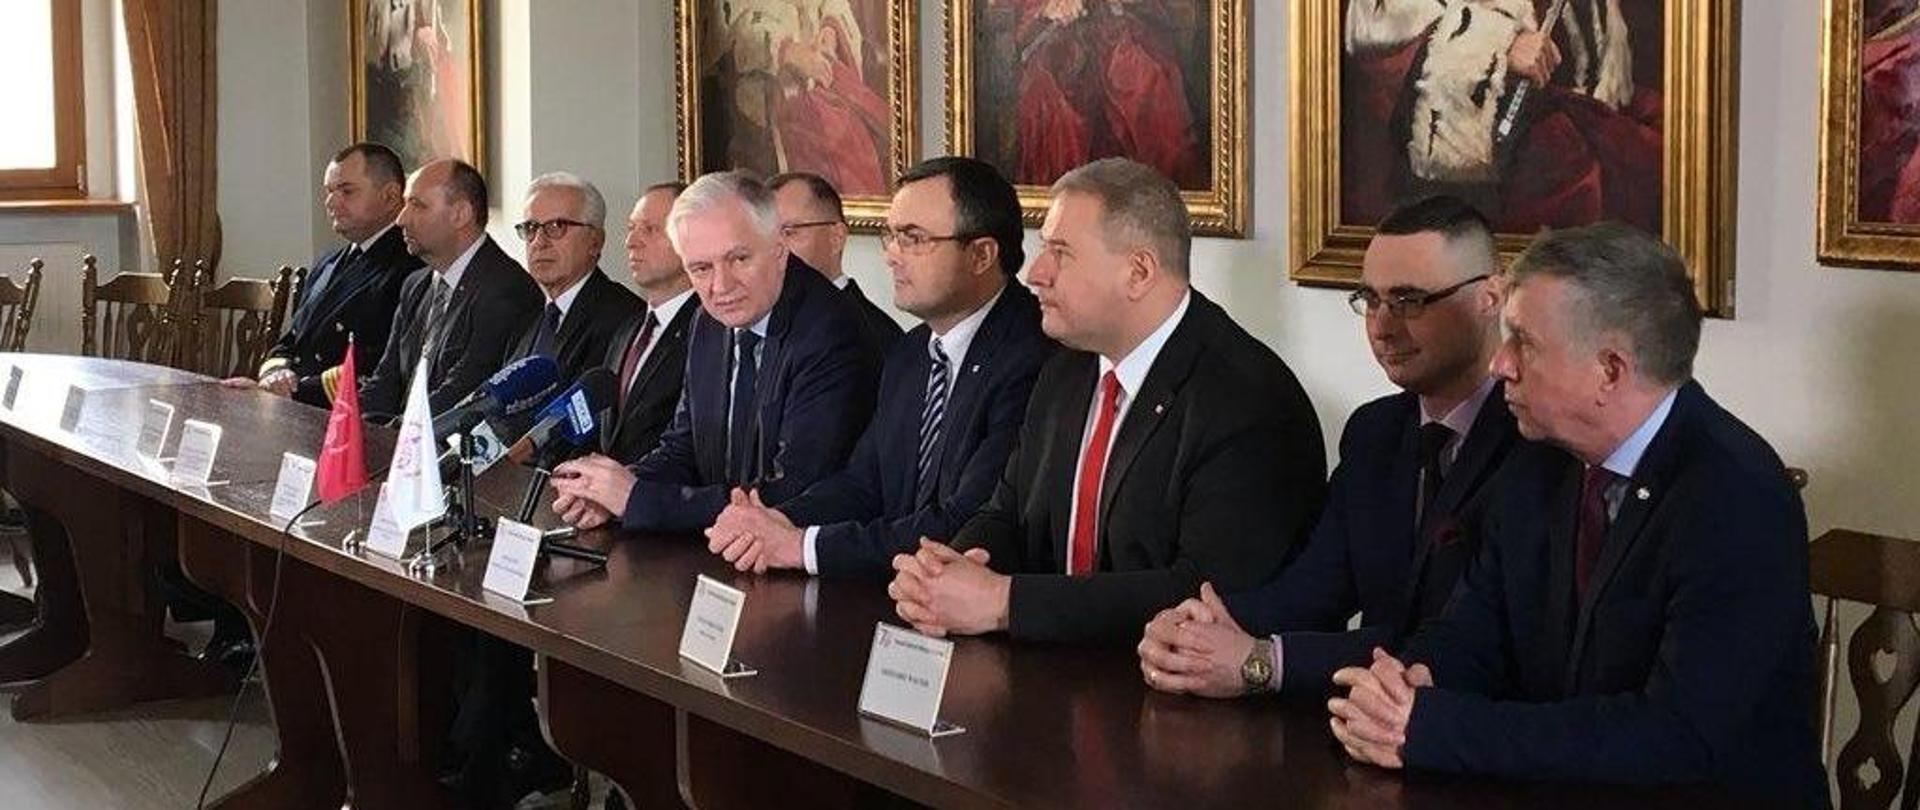 Jarosław Gowin i kadra szczecińskich uczelni siedzą za stołem, przed ścianą z portretami rektorów uczelni